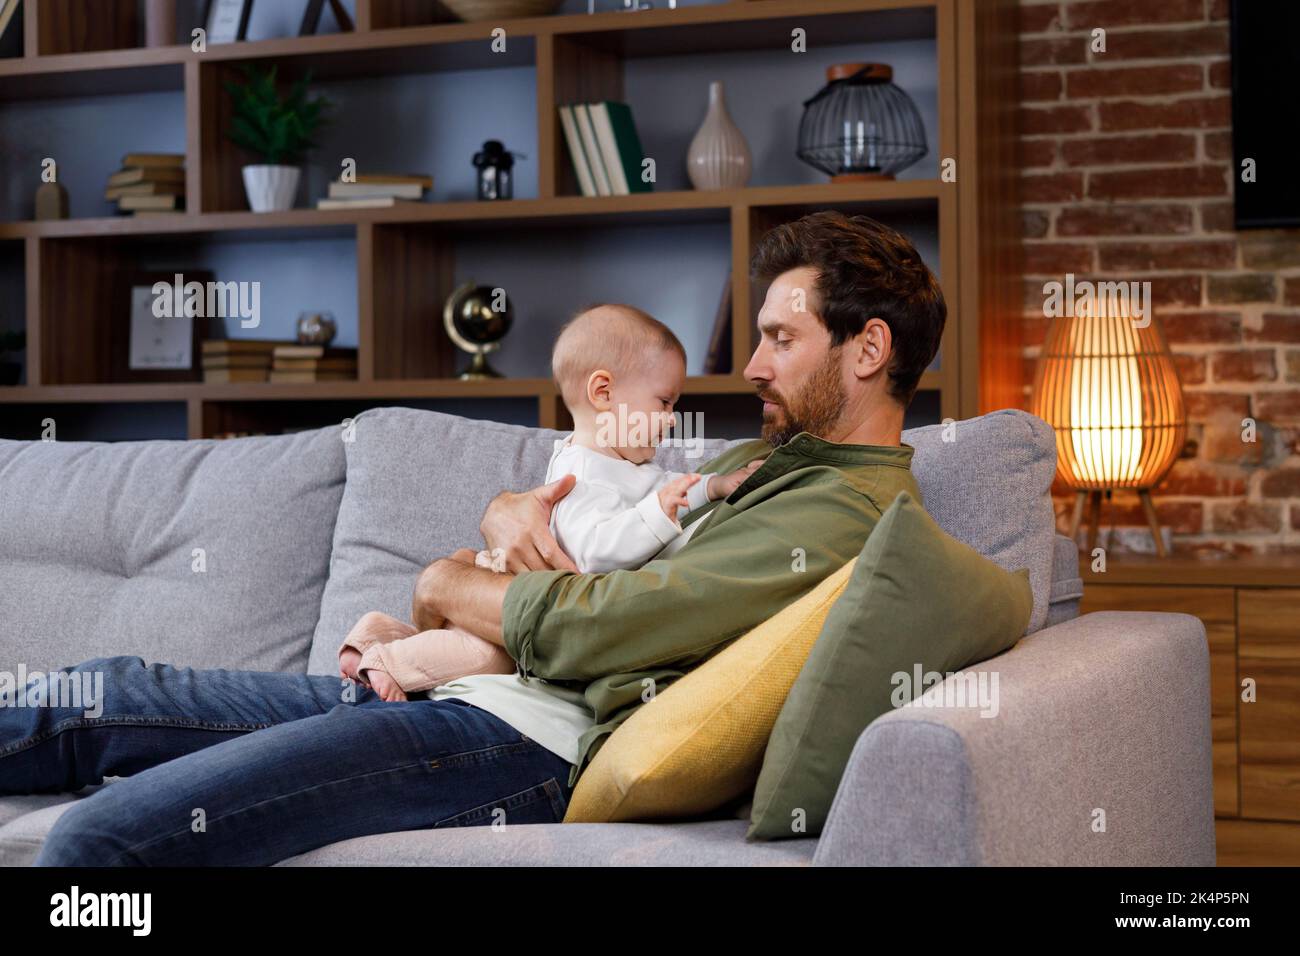 Papa spielt mit seinem kleinen Baby auf der Couch in einer gemütlichen Wohnung. Väterliche Liebe. Vater umarmt und küsst seine kleine Tochter. Stockfoto